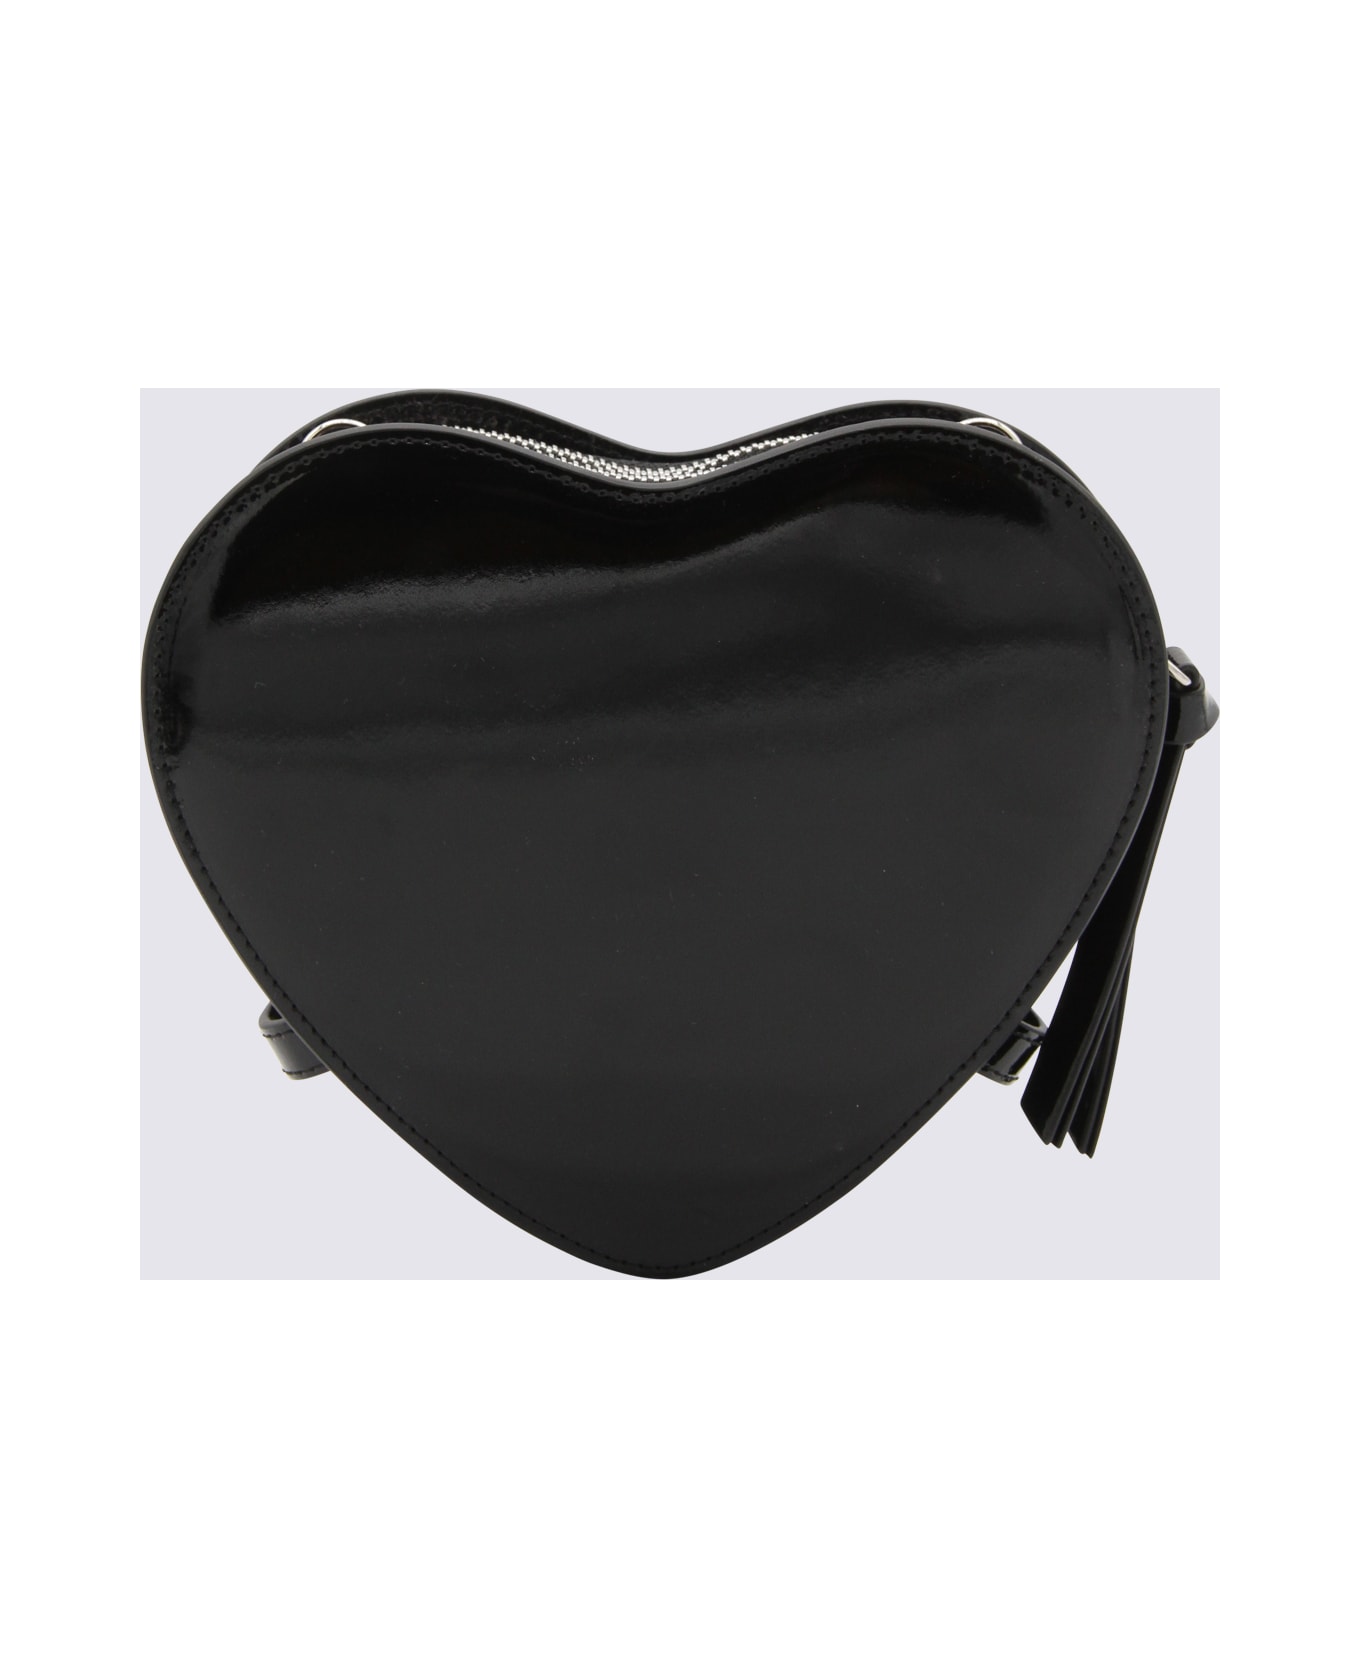 Vivienne Westwood Black Leather Bag - Black ショルダーバッグ